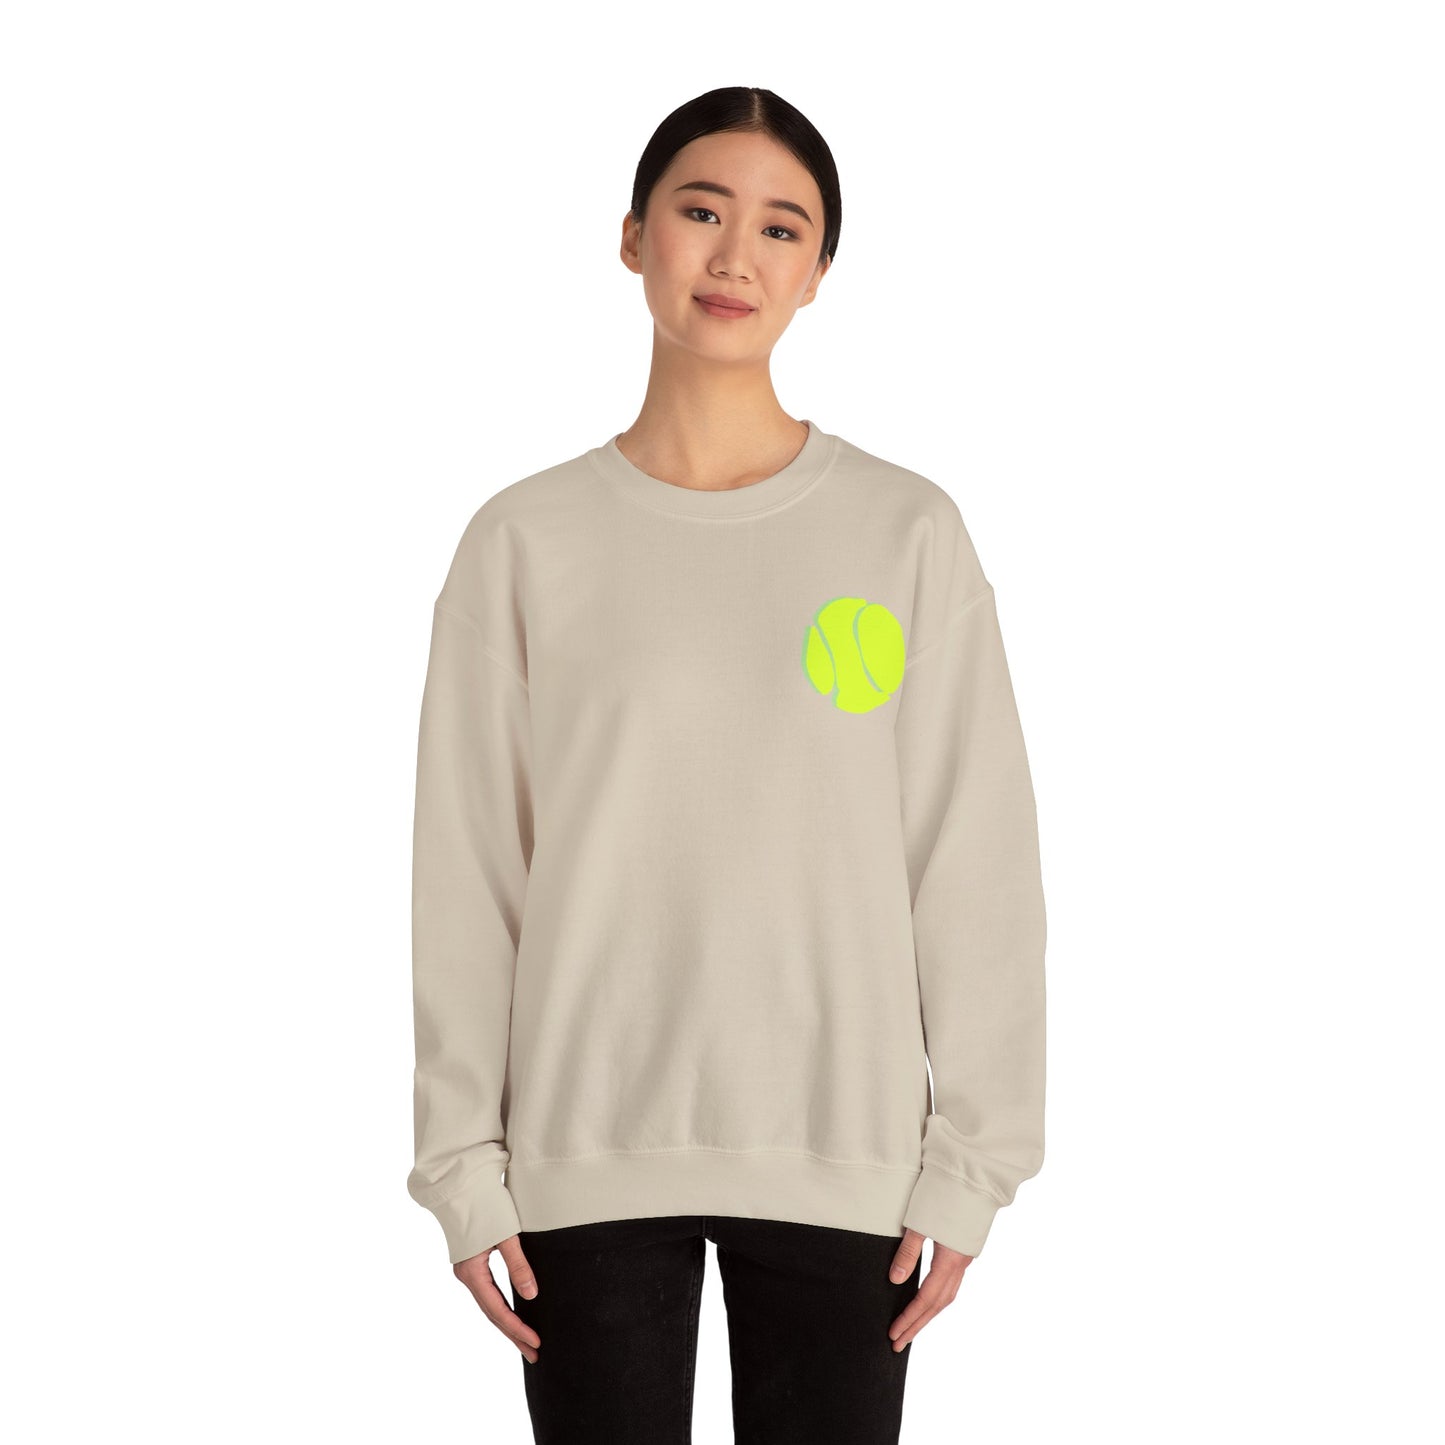 Carrie Song Art Signature Tennis Ball Sweatshirt